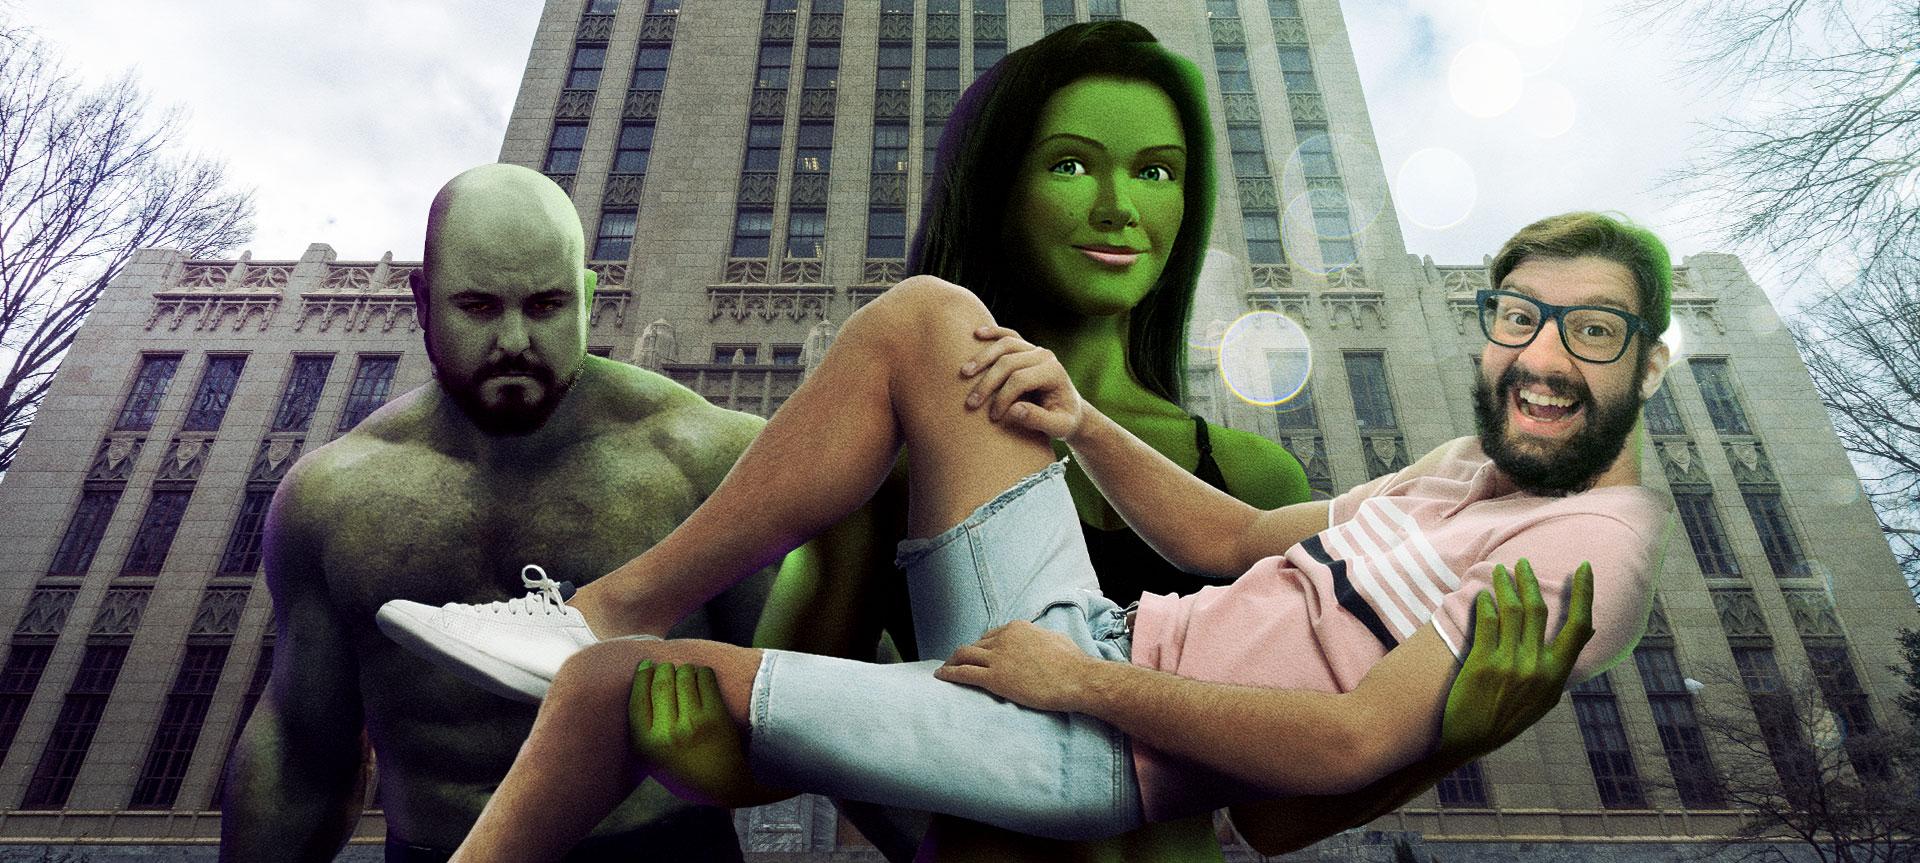 Mulher-Hulk: A DISNEY METEU O BONECO NO MCU! | Trailer Marvel She-Hulk